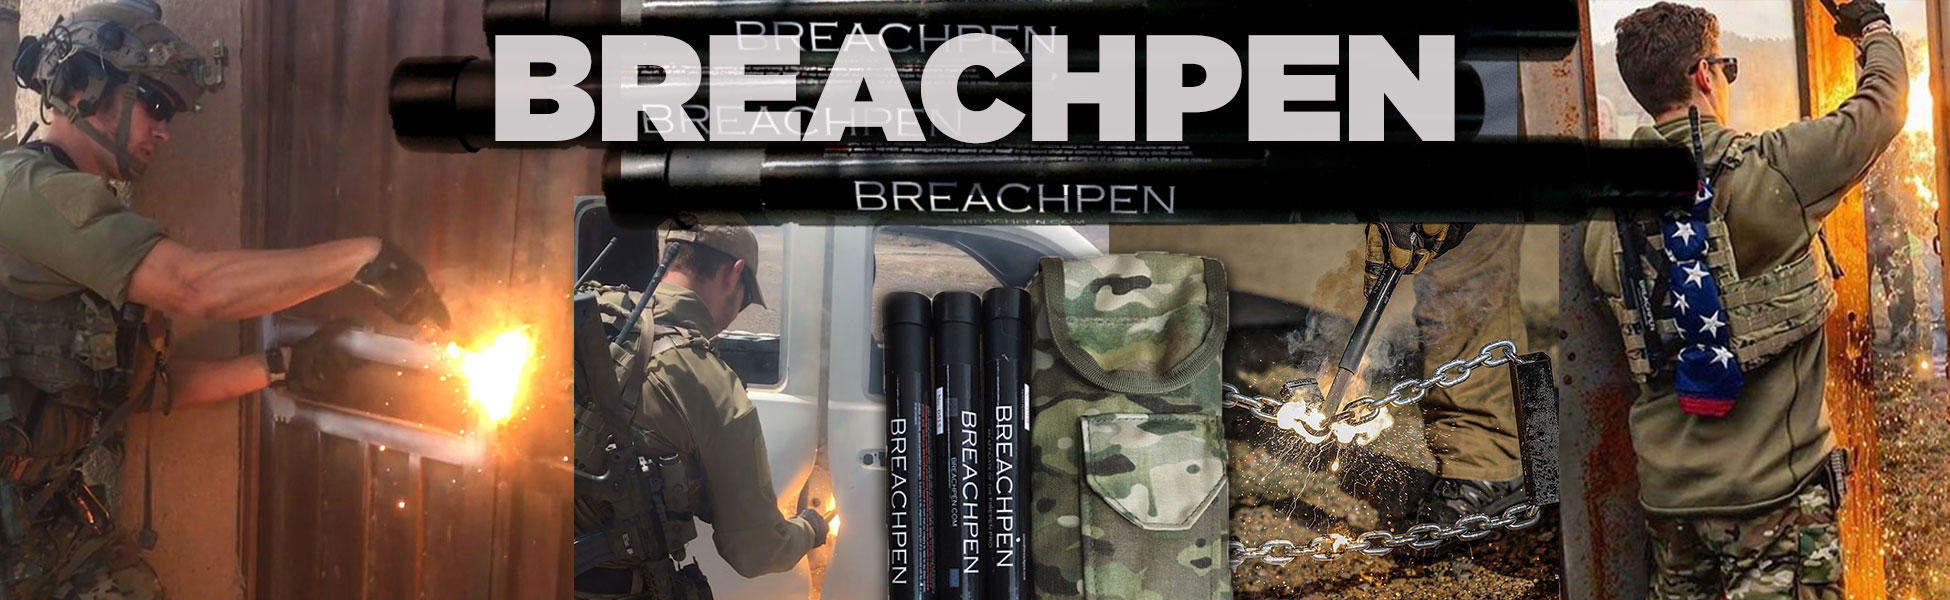 breach pen